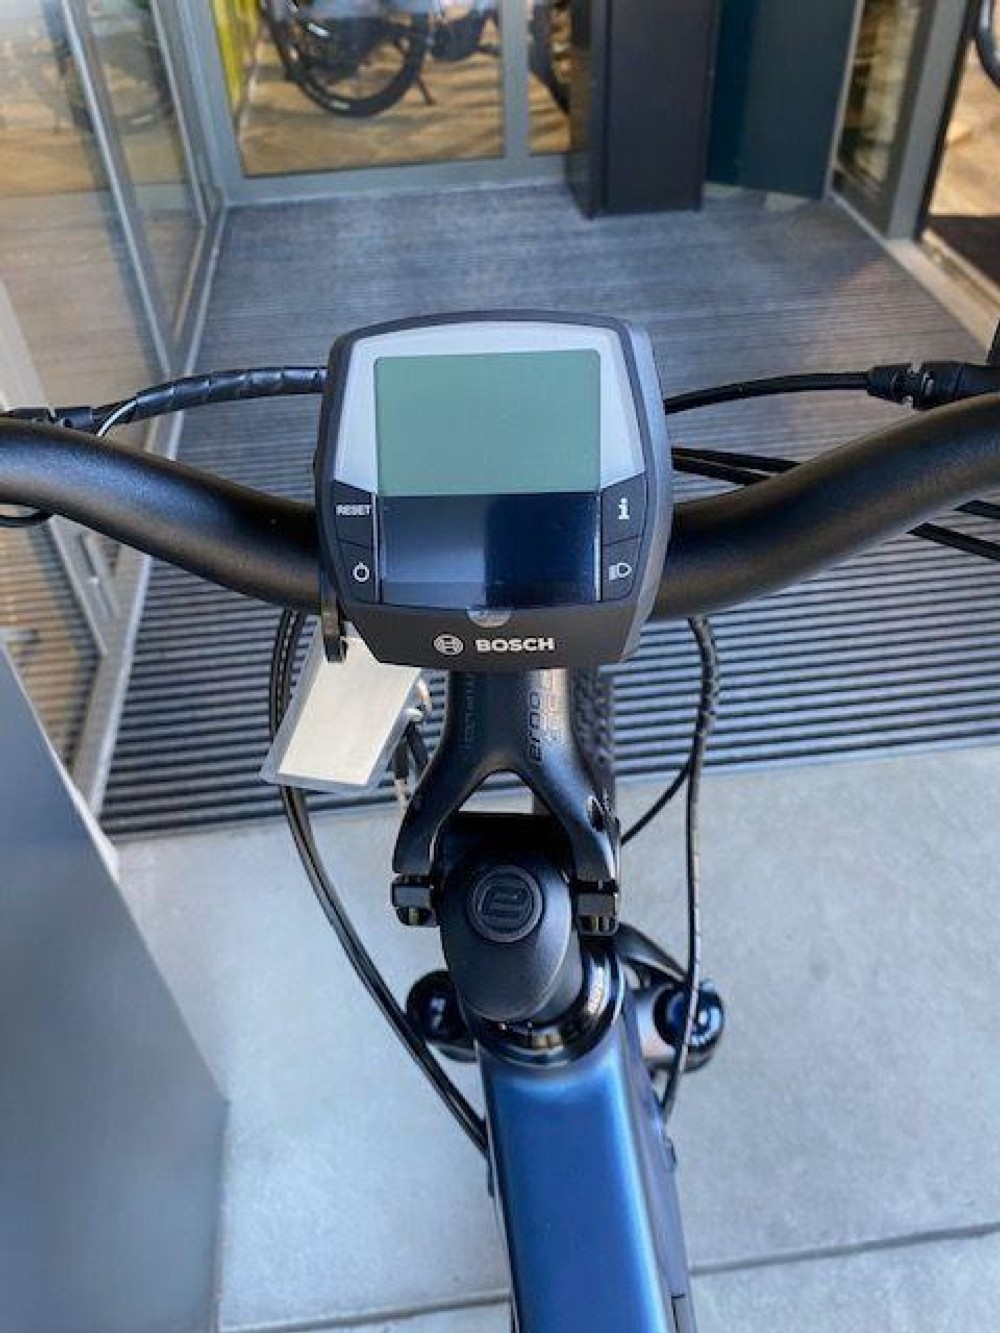 E-Bike kaufen: SIMPLON Kagu CX 27.5 Nouveau